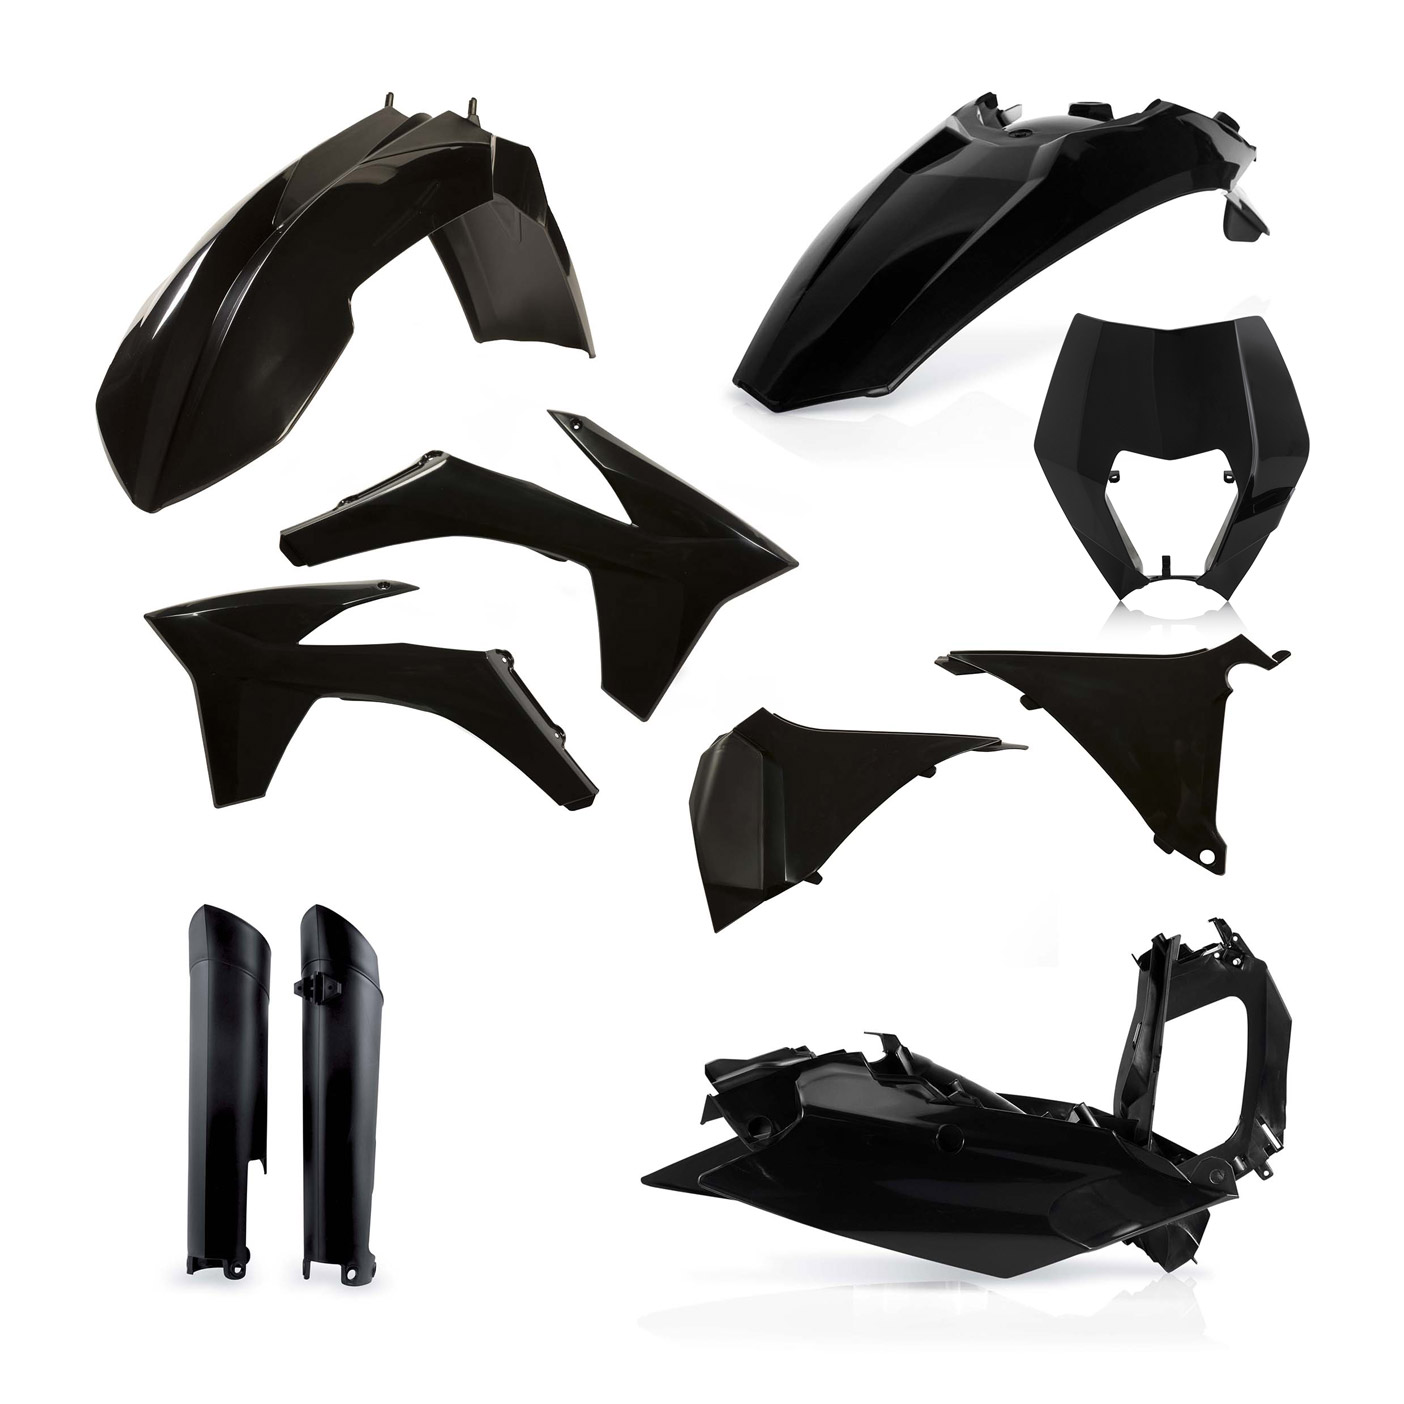 Plastikteile für deine KTM EXC und EXC-F in schwarz, bestehend aus Frontkotflügel, Heckkotflügel, Tankspoiler, Gabelschoner, Nummerntafeln, Seitenteilen und Lampenmaske